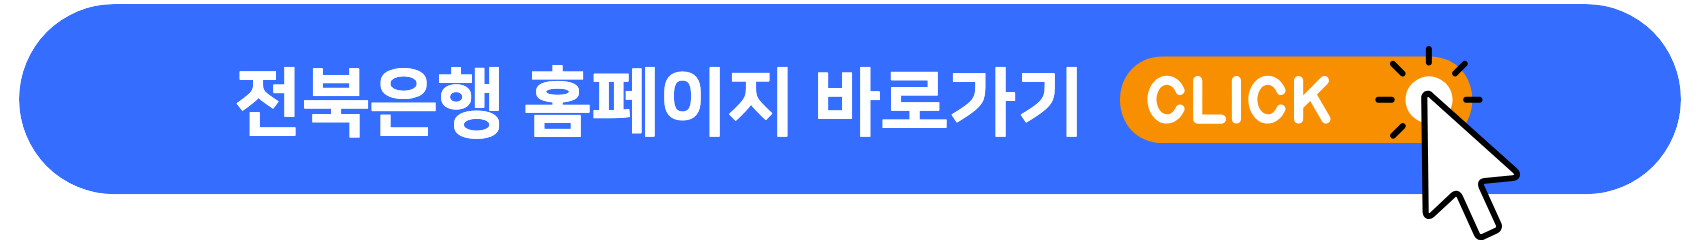 전북은행_홈페이지